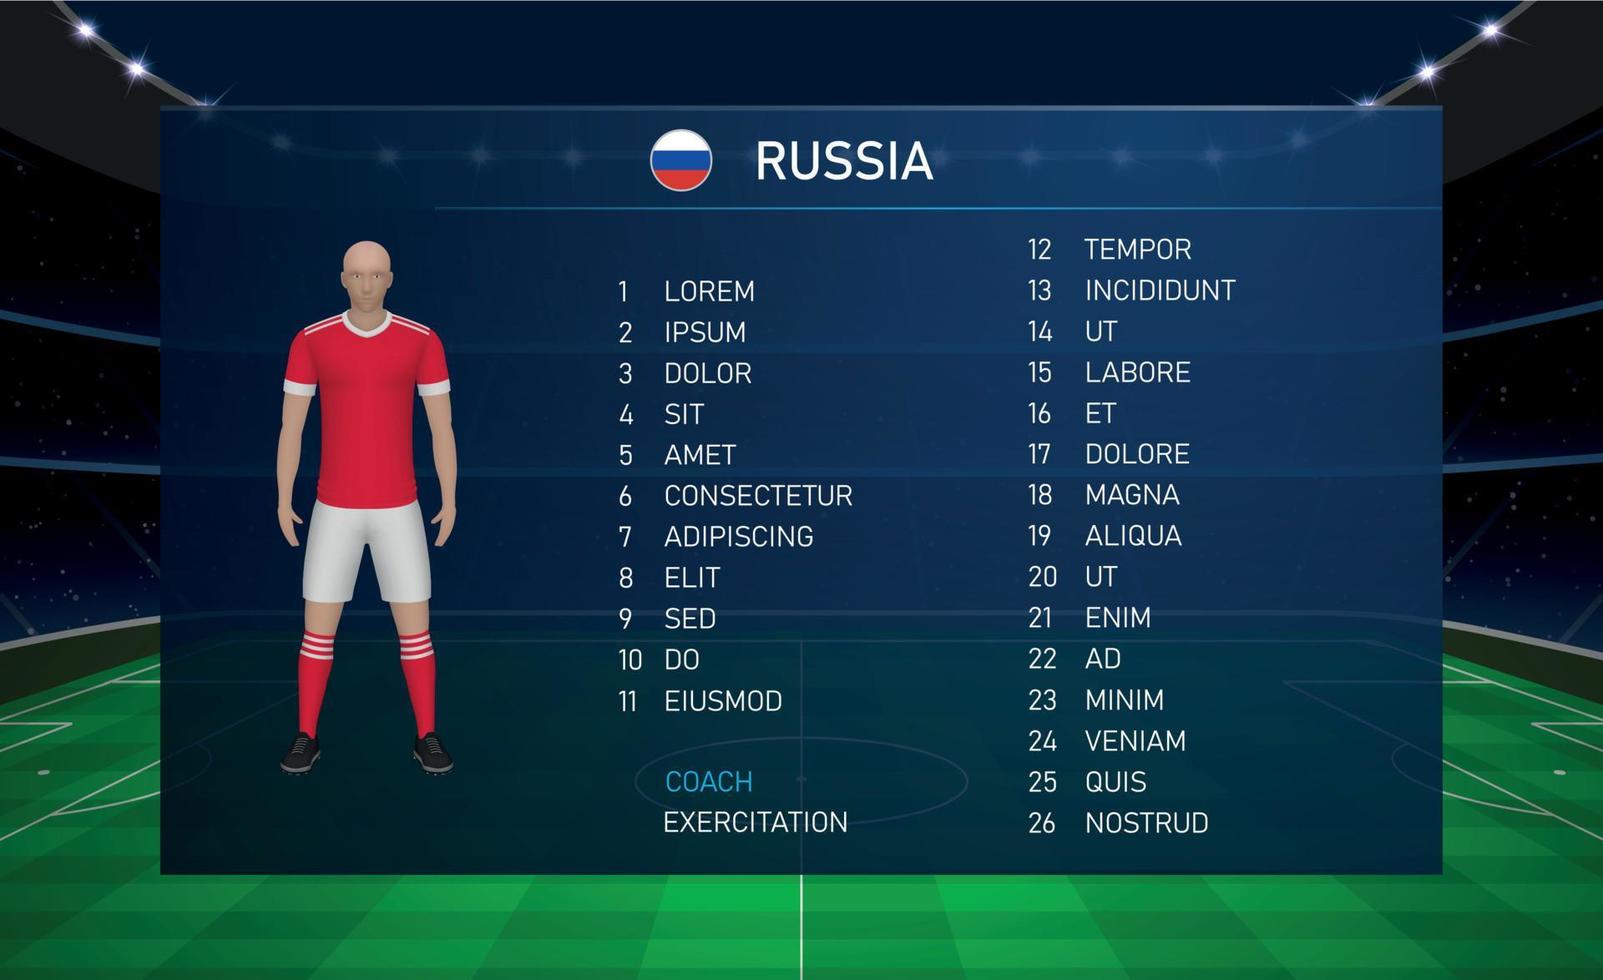 graphique de diffusion de tableau de bord de football avec l'équipe de football de l'équipe de russie vecteur